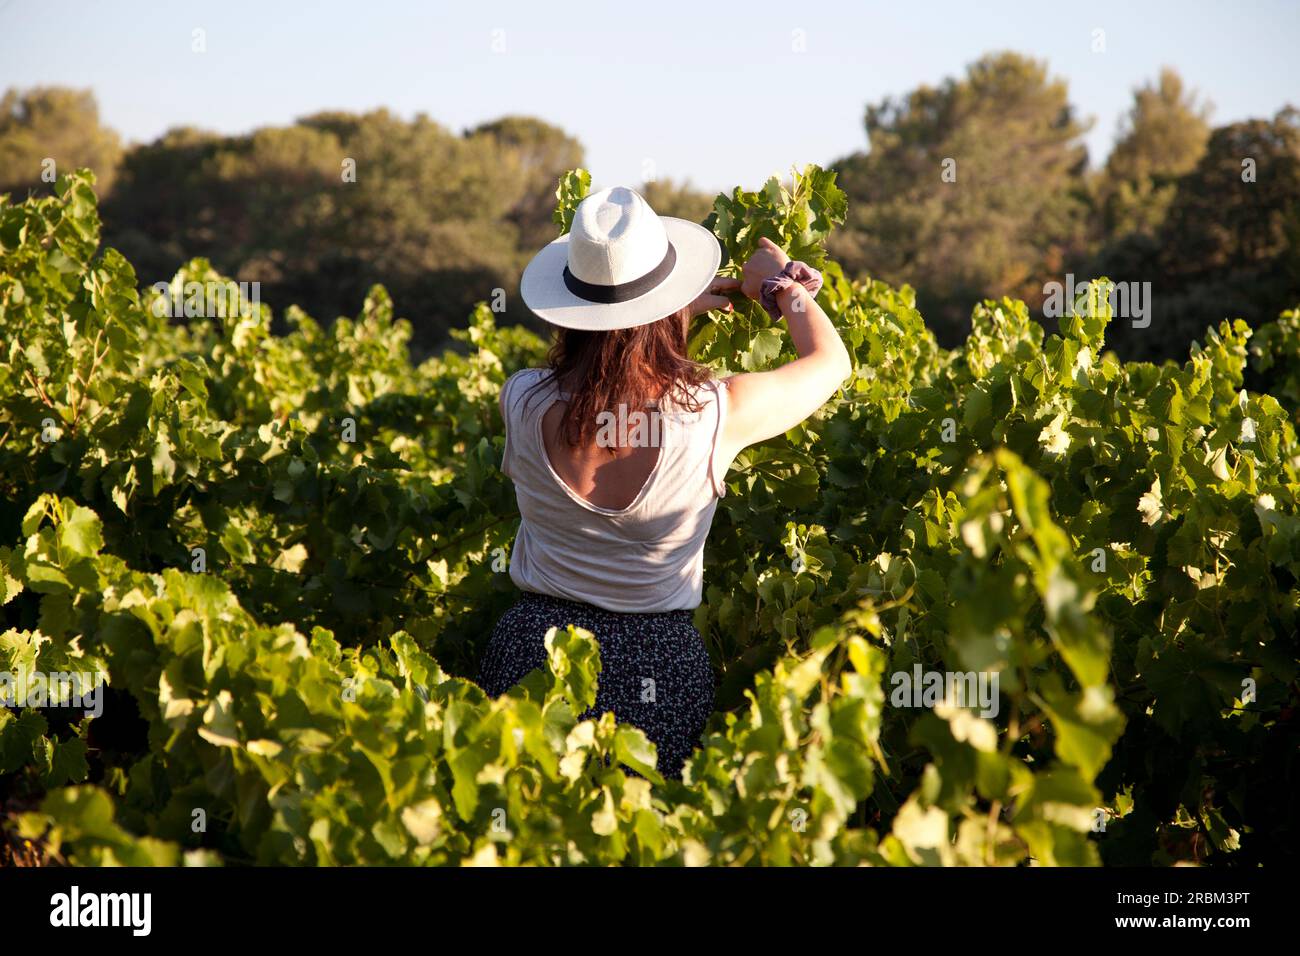 vineyard work Stock Photo